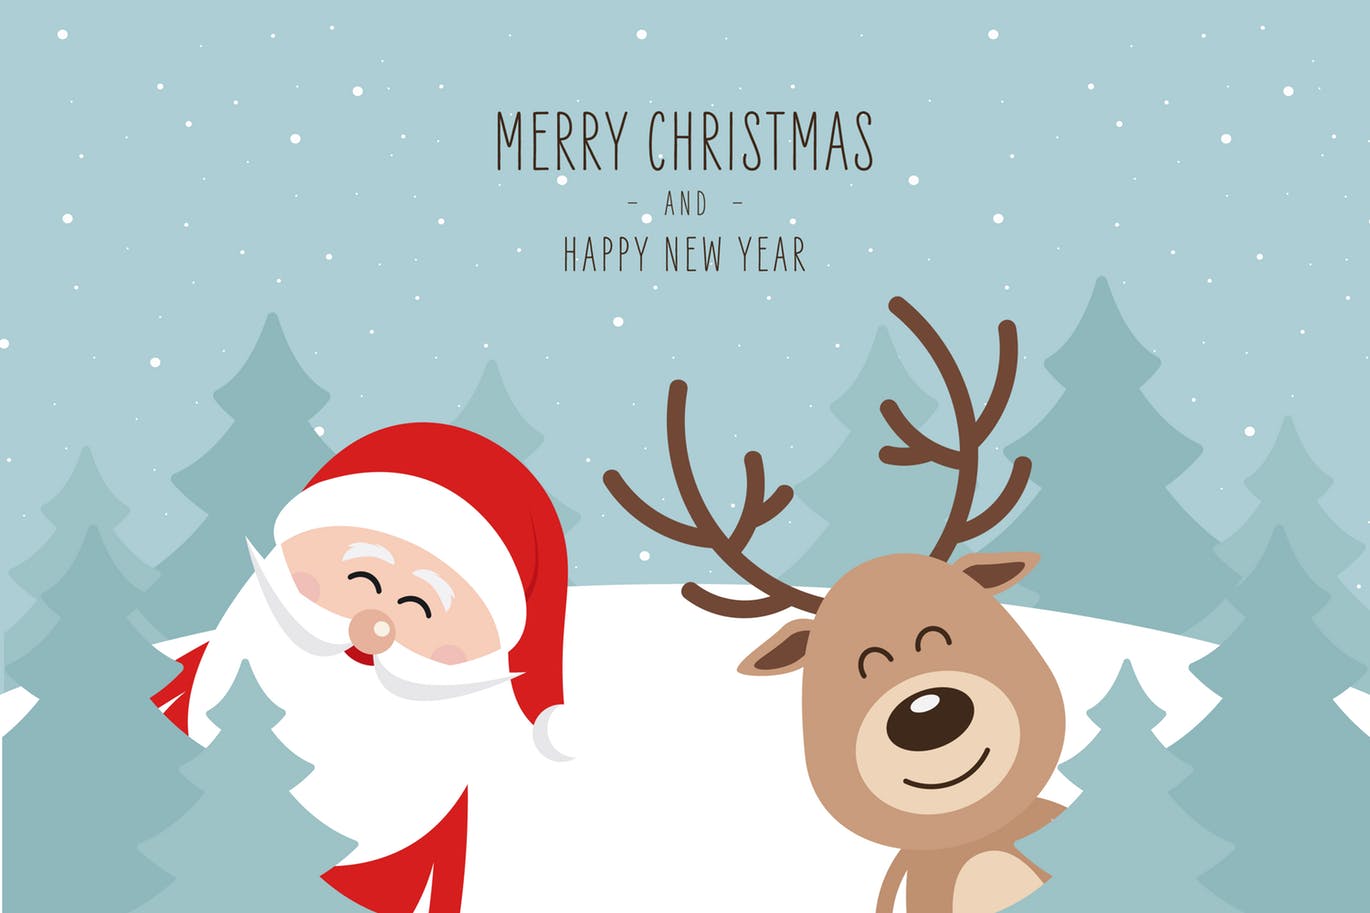 可爱圣诞老人和驯鹿圣诞节主题矢量设计素材 Christmas Cute Santa Claus and Reindeer Vector插图